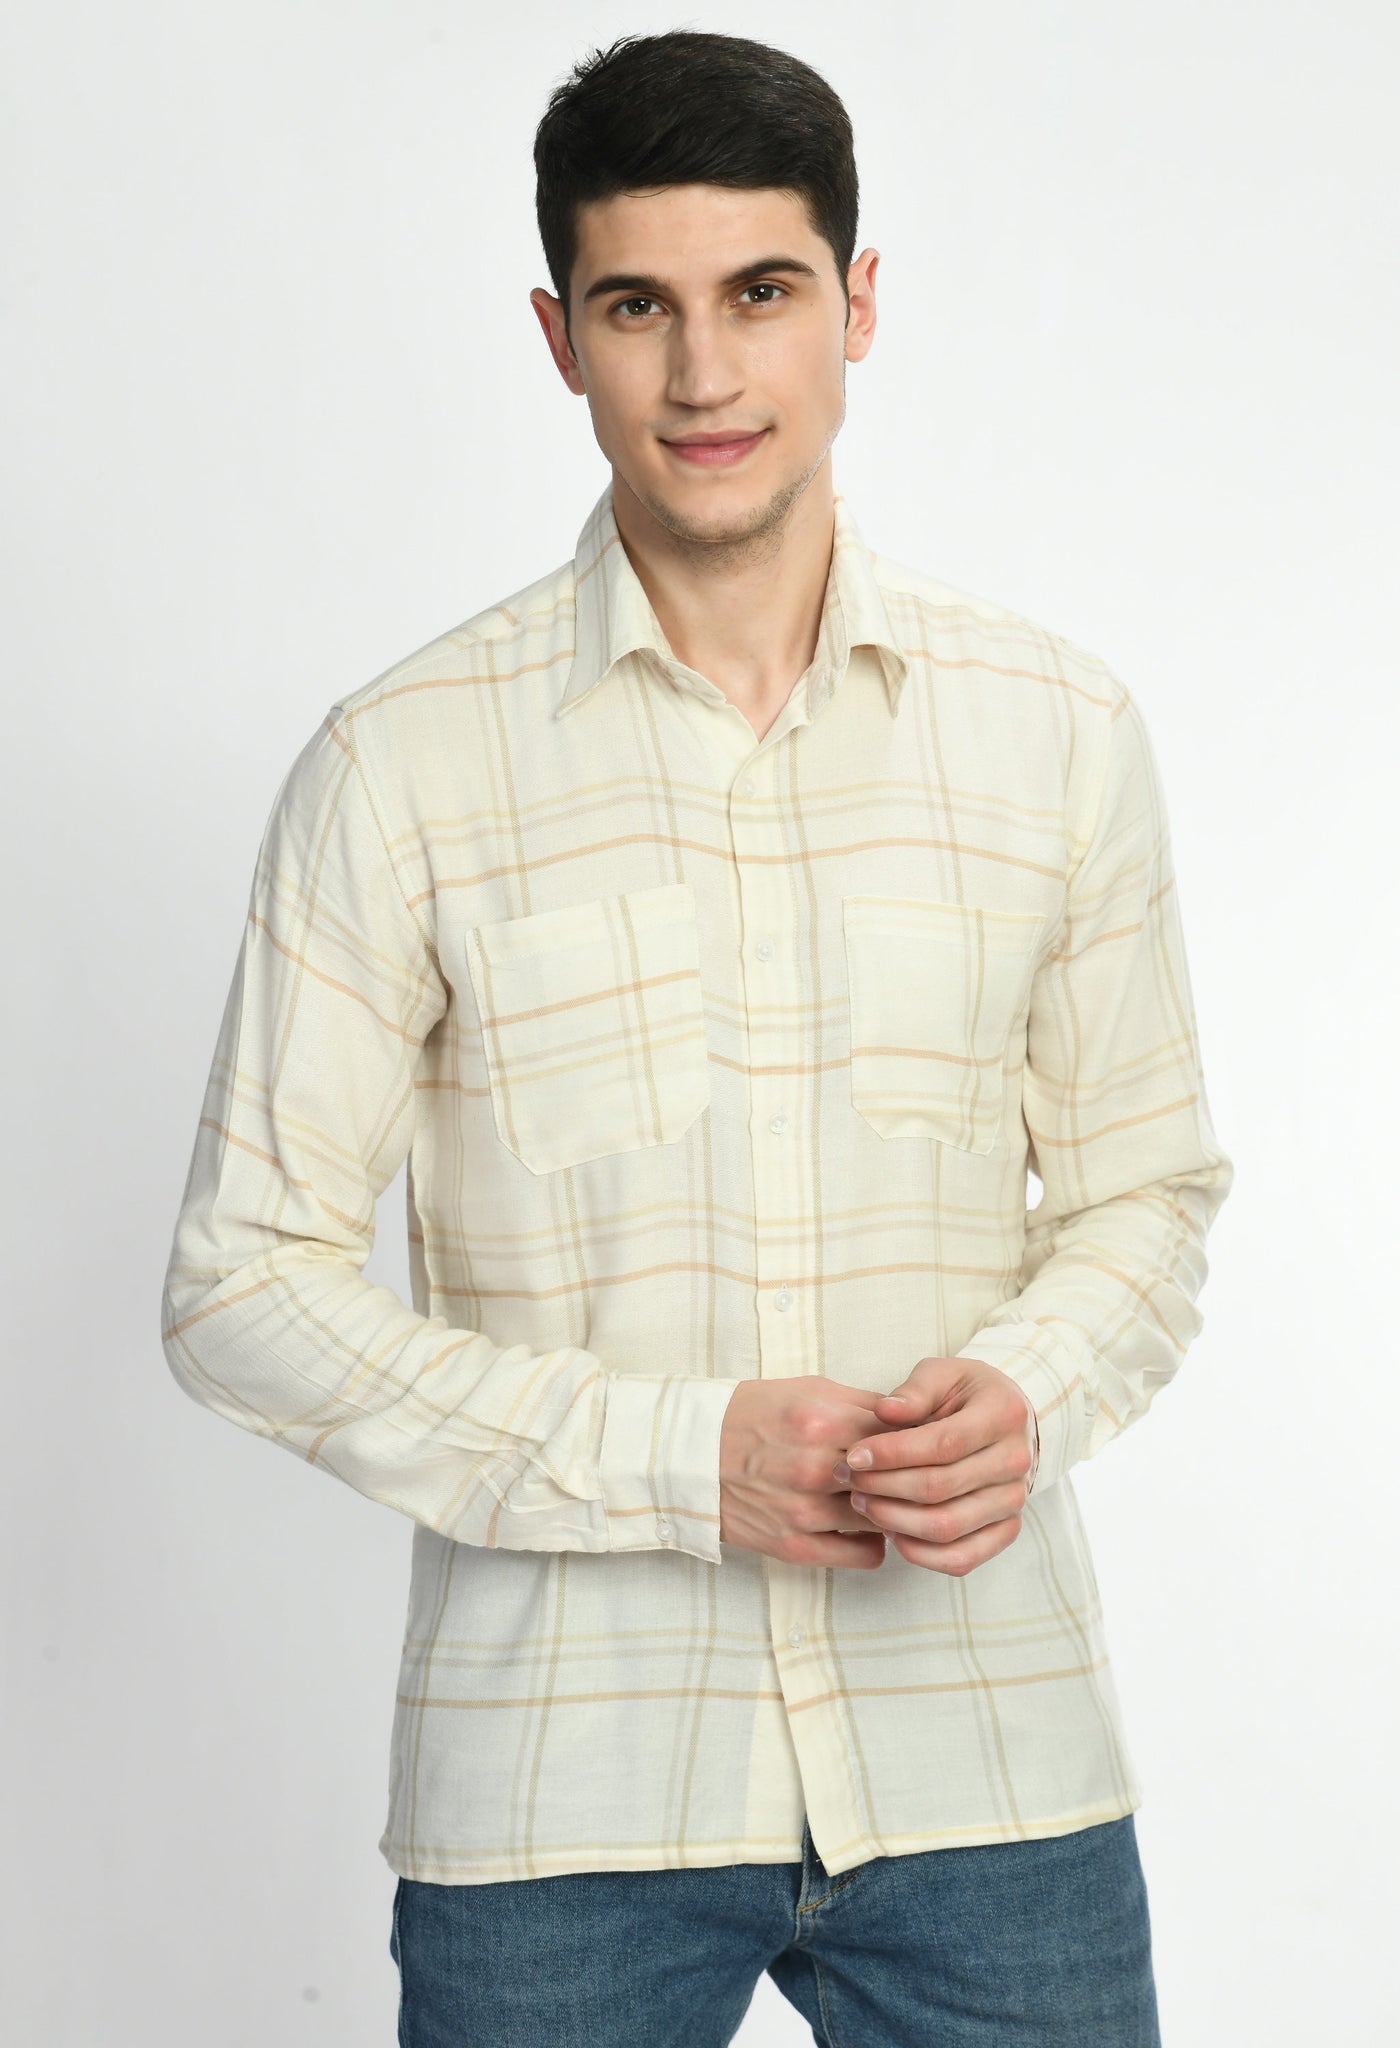 White & Yellow Checks Full Sleeves Shirt